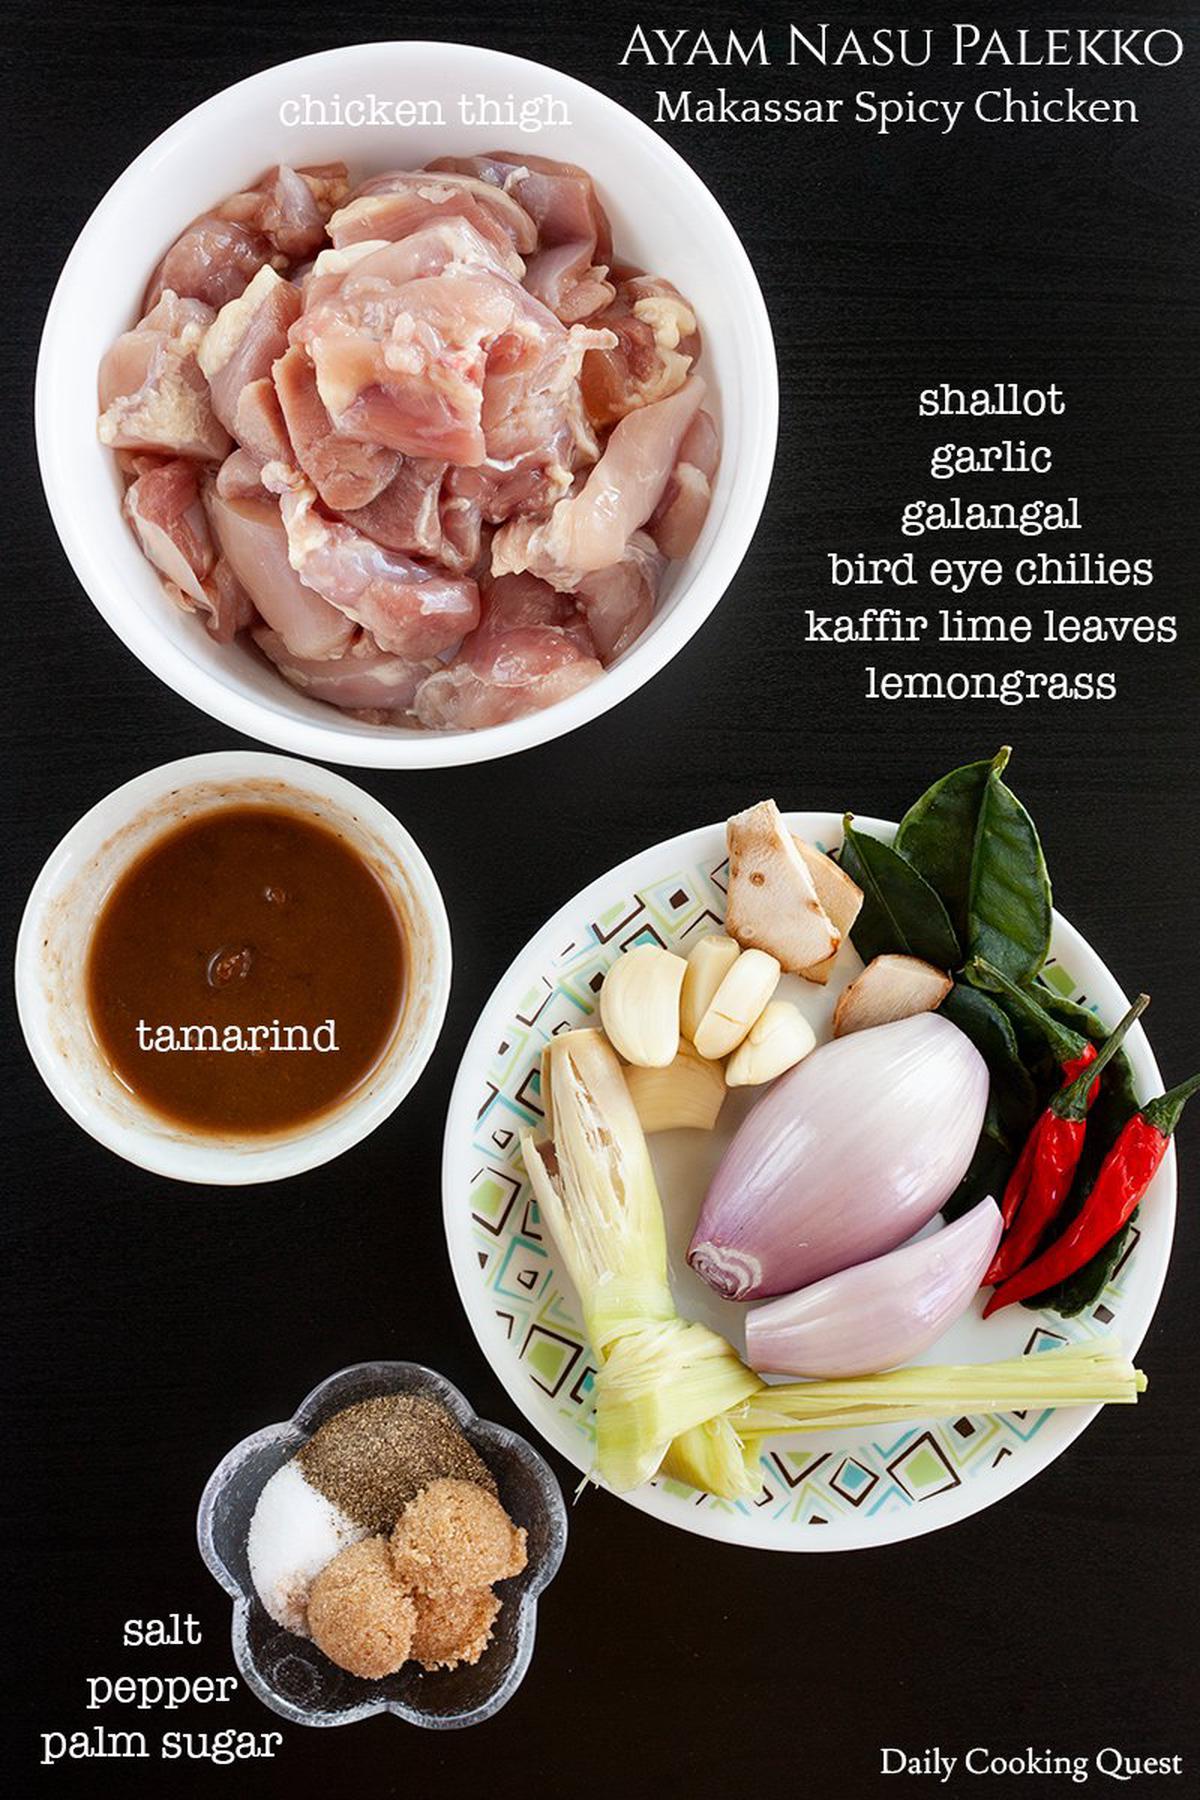 Ayam Nasu Palekko - Makassar Spicy Chicken